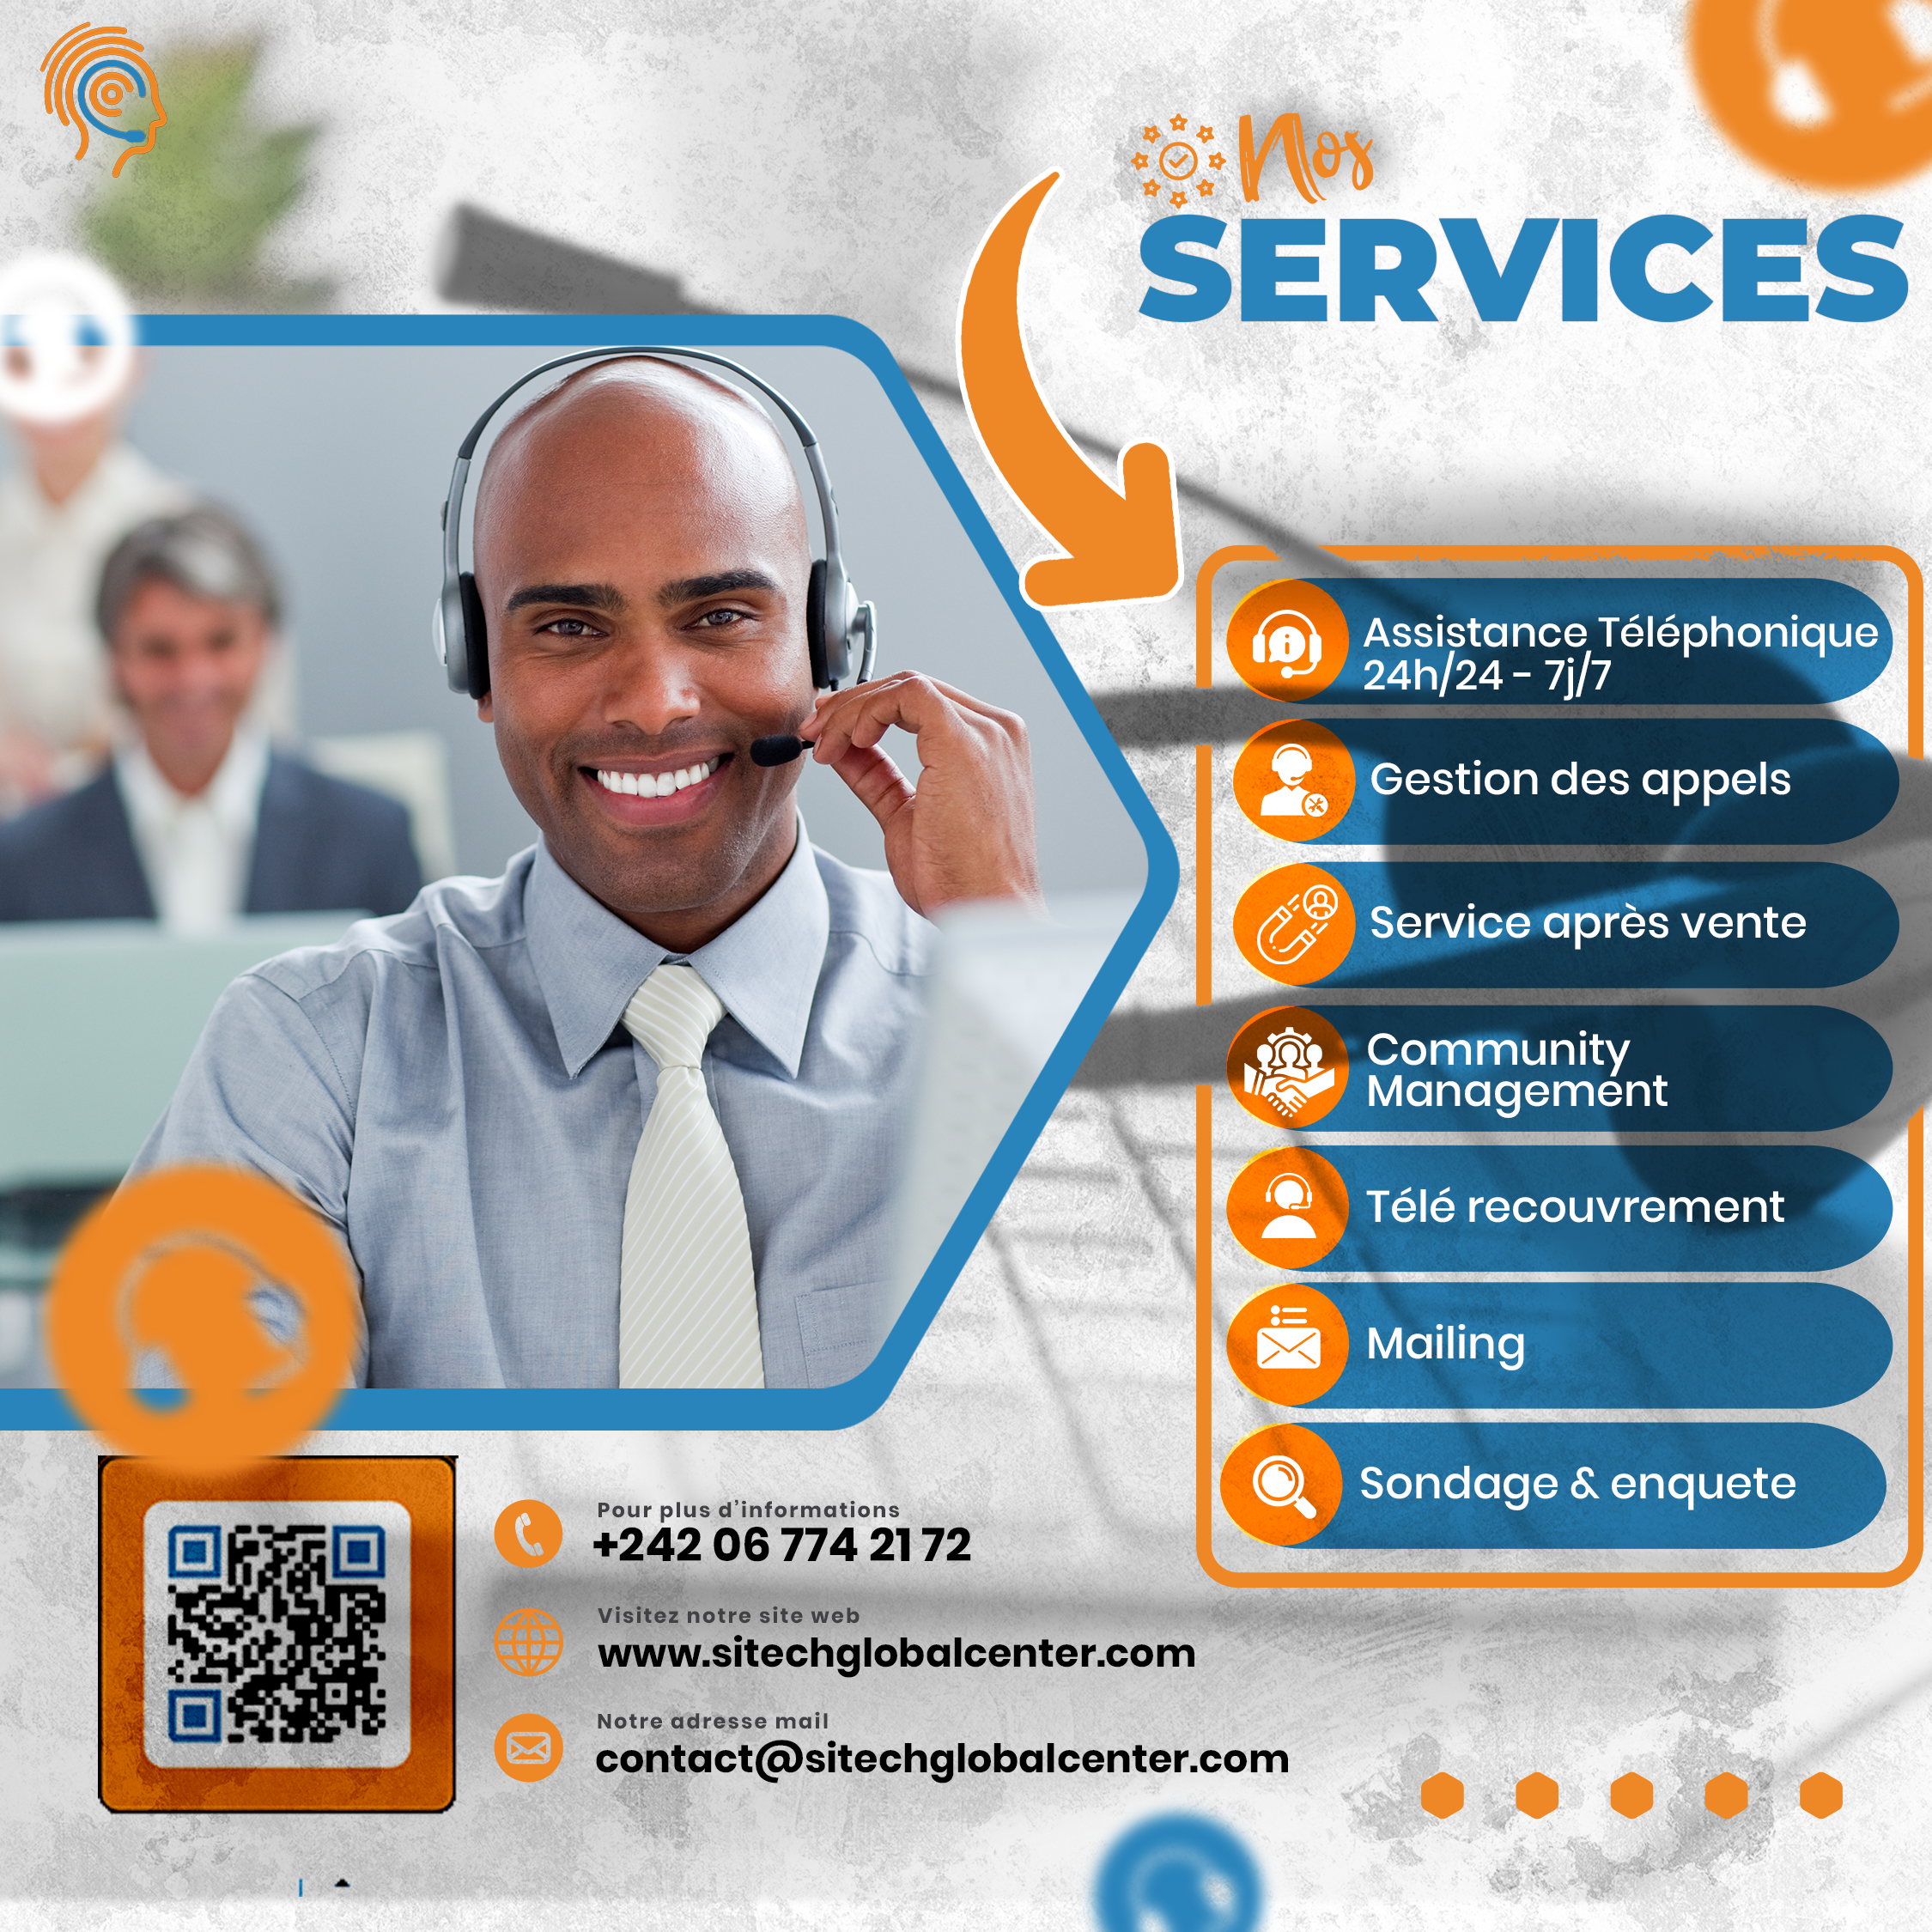 Comment un Call Center peut améliorer votre service clients.